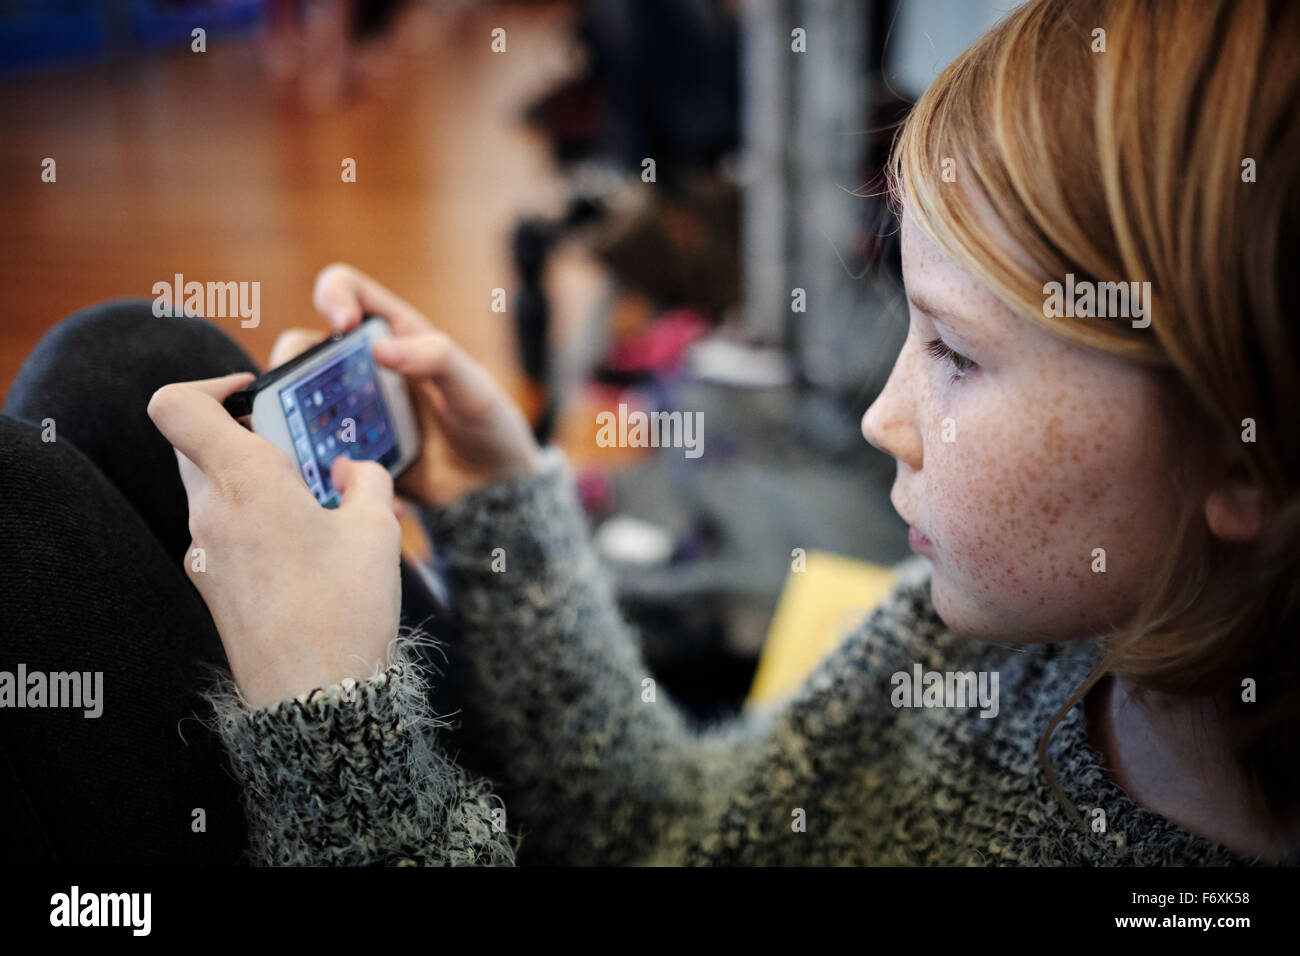 Giovane ragazza bionda la riproduzione su telefono mobile device Foto Stock